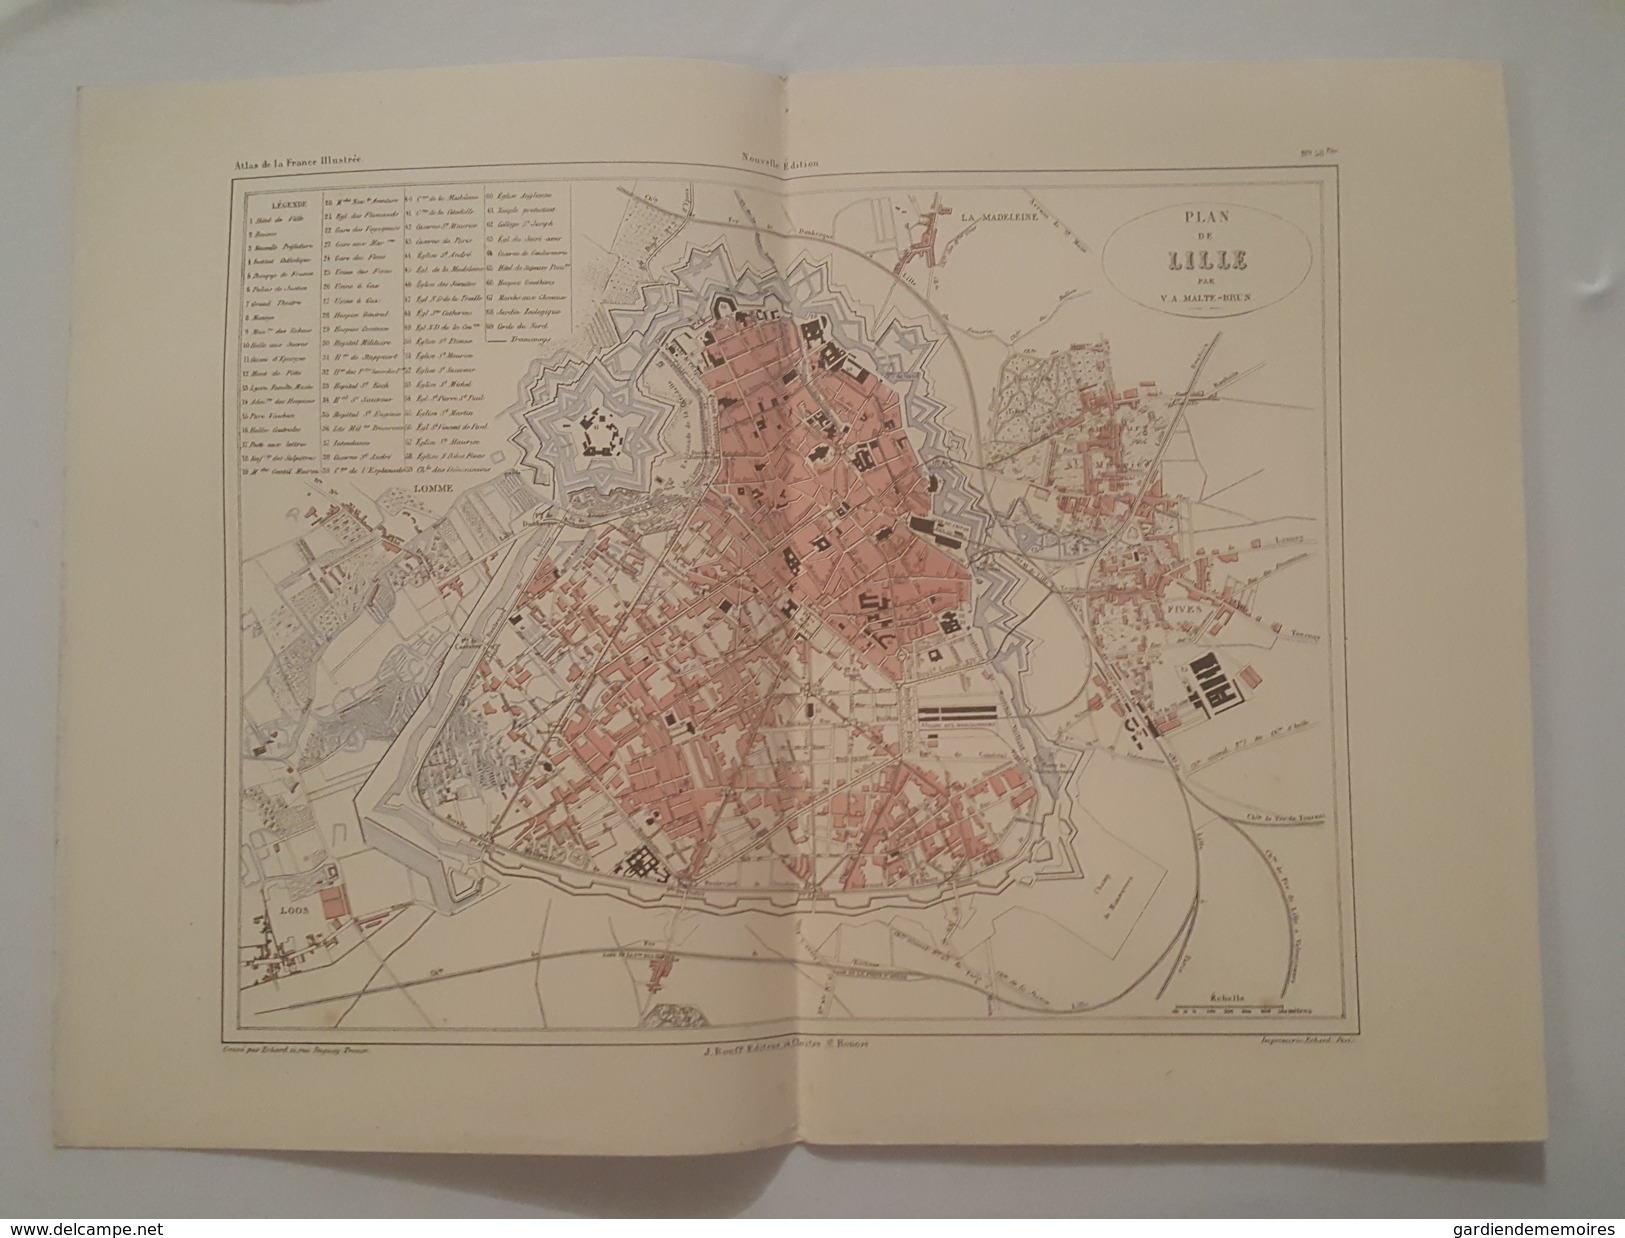 Carte Du XIX ème - Lille Par Malte Brun - Gravé Par Erhard - Rouff éditeur - Cartes Géographiques